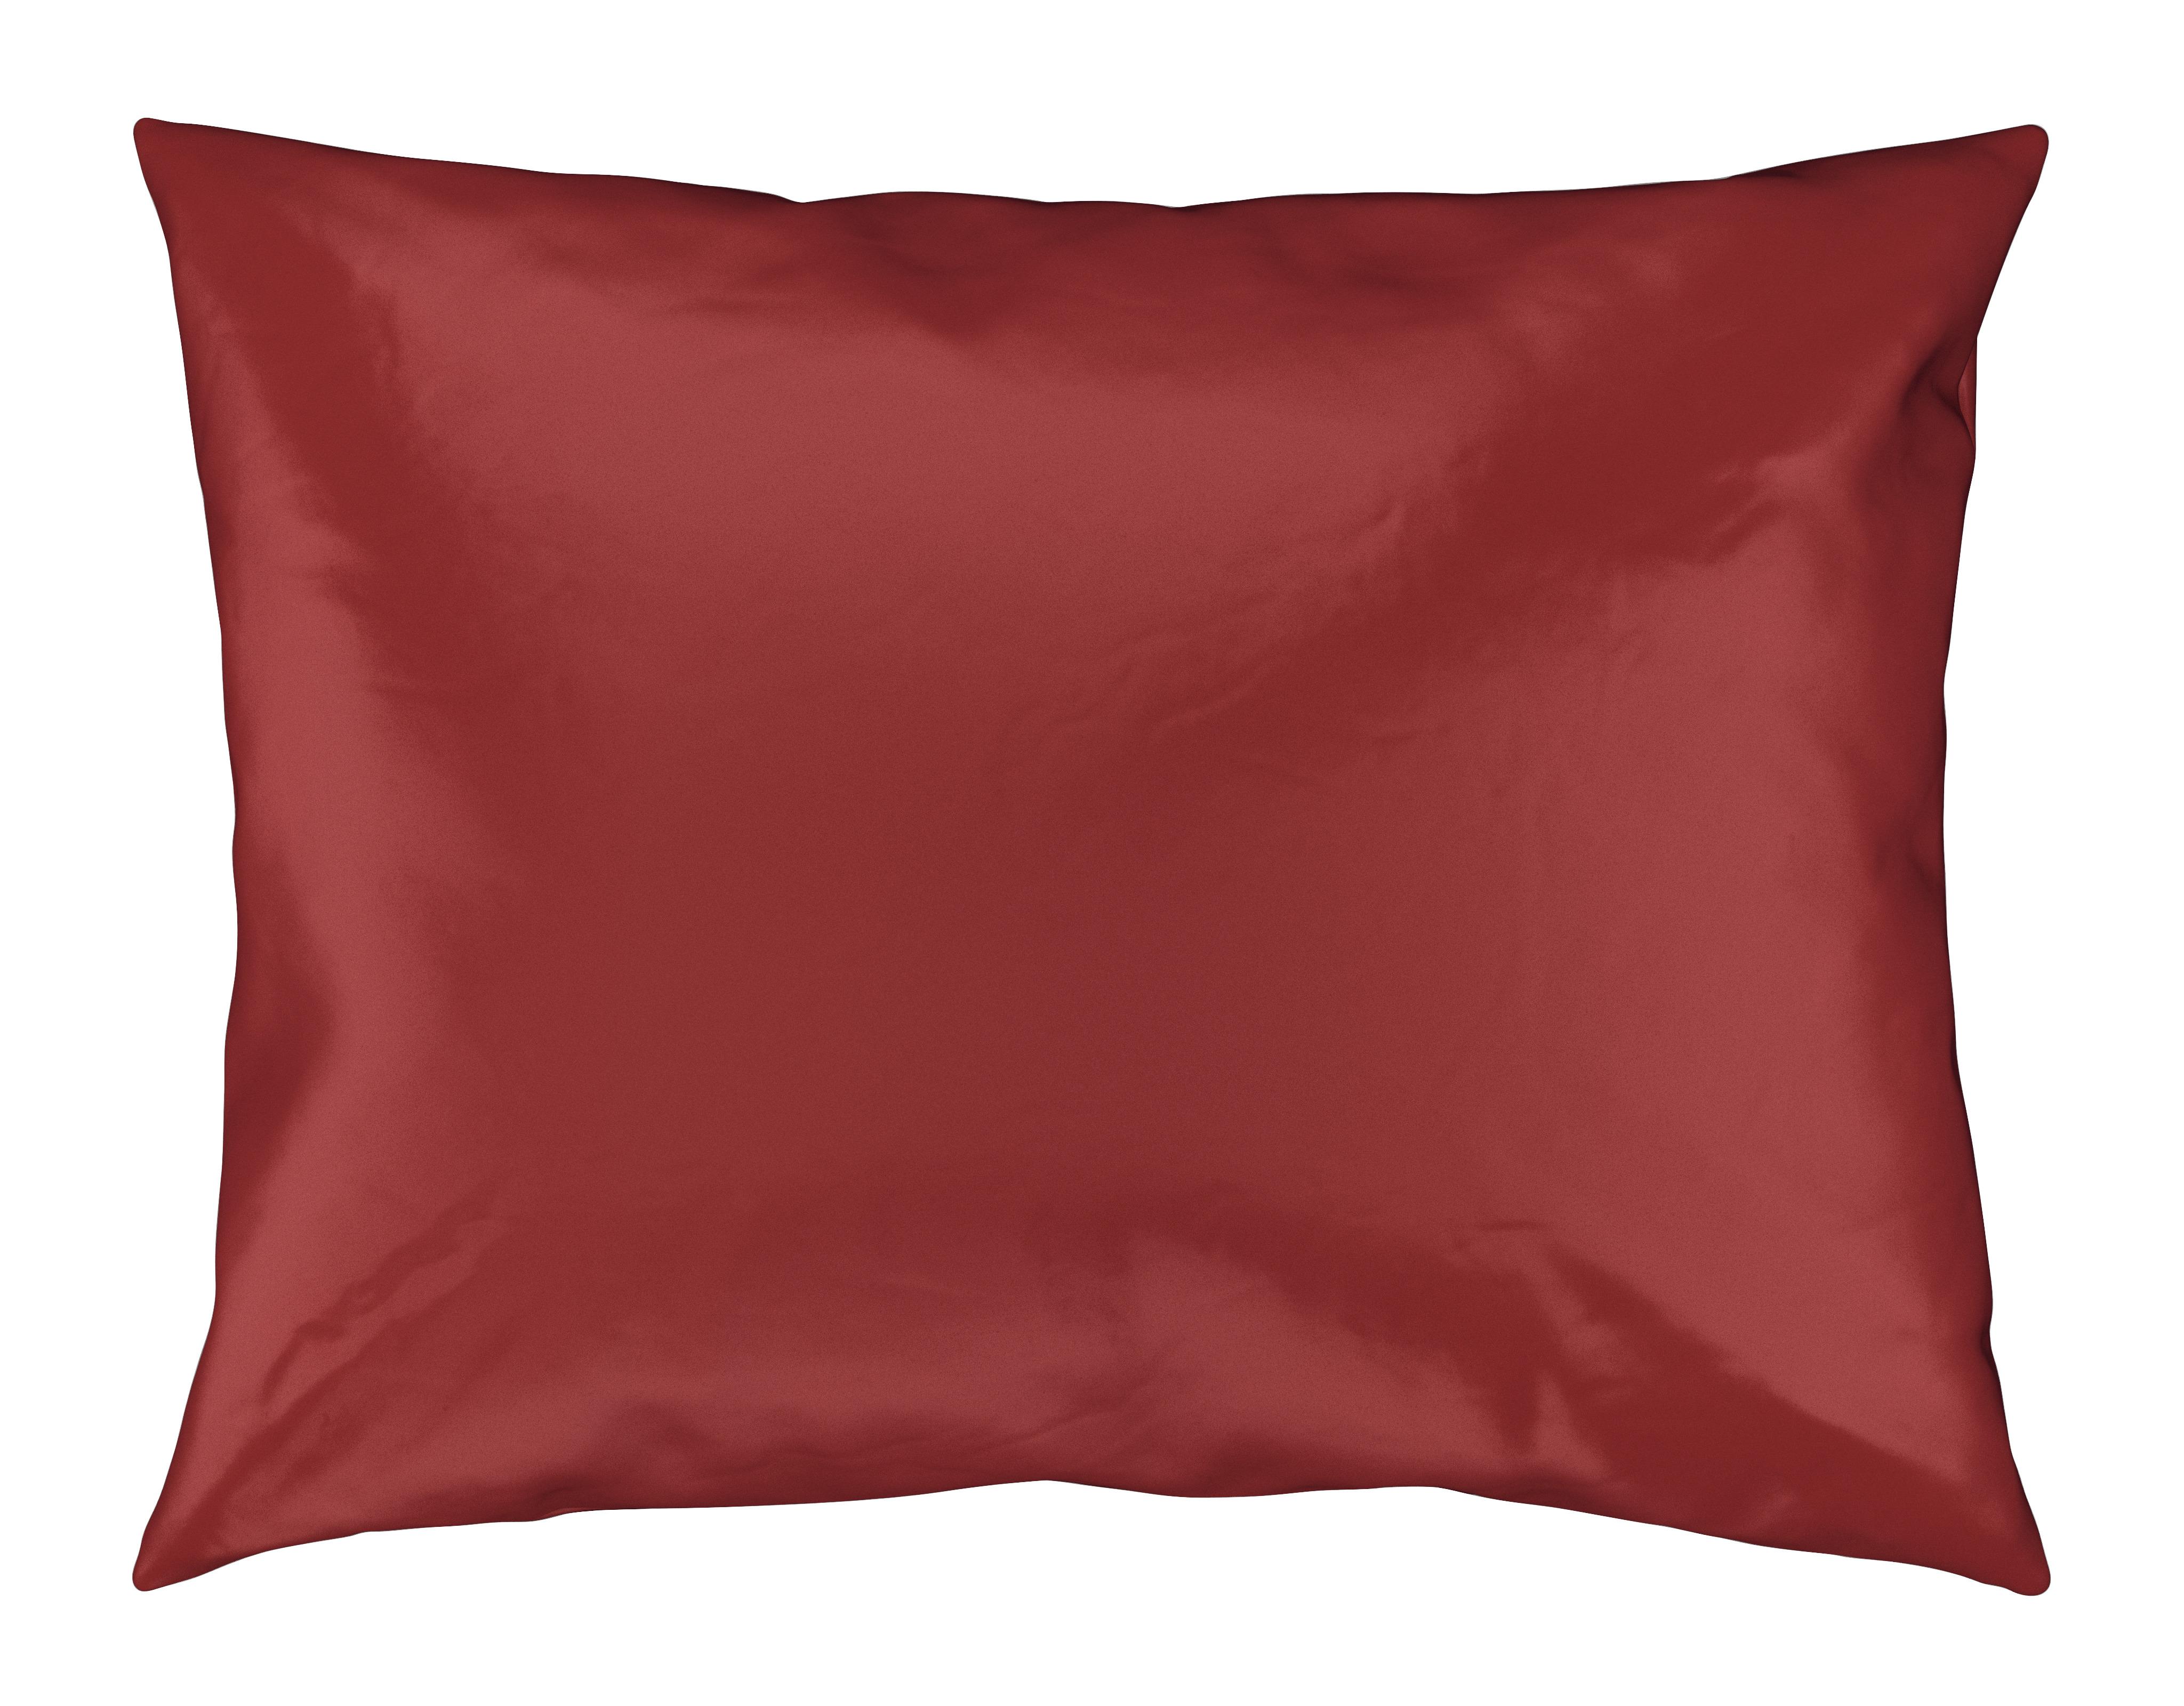 Kissenhüllen Alex Uni in Terra Cotta ca. 40x60cm - Terra cotta, MODERN, Textil (40/60cm) - Premium Living